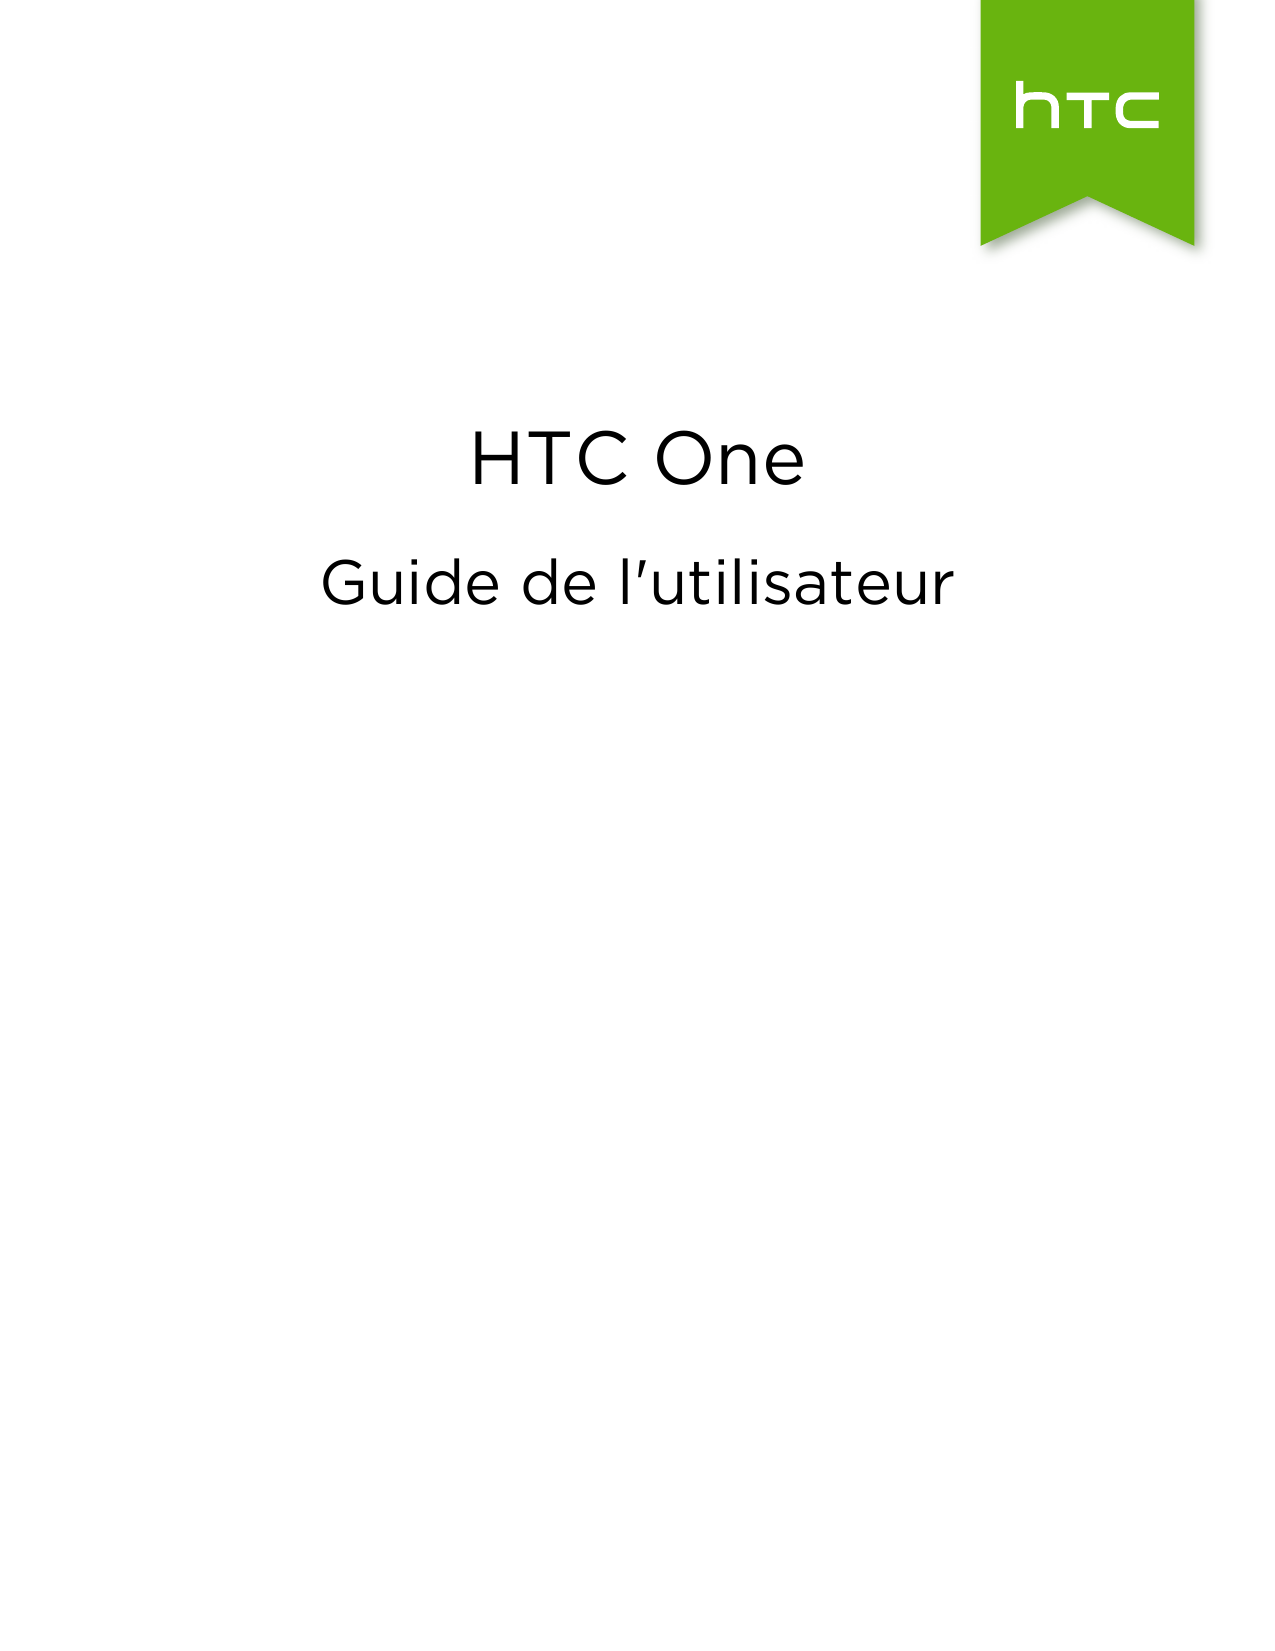 HTC OneGuide de l'utilisateur